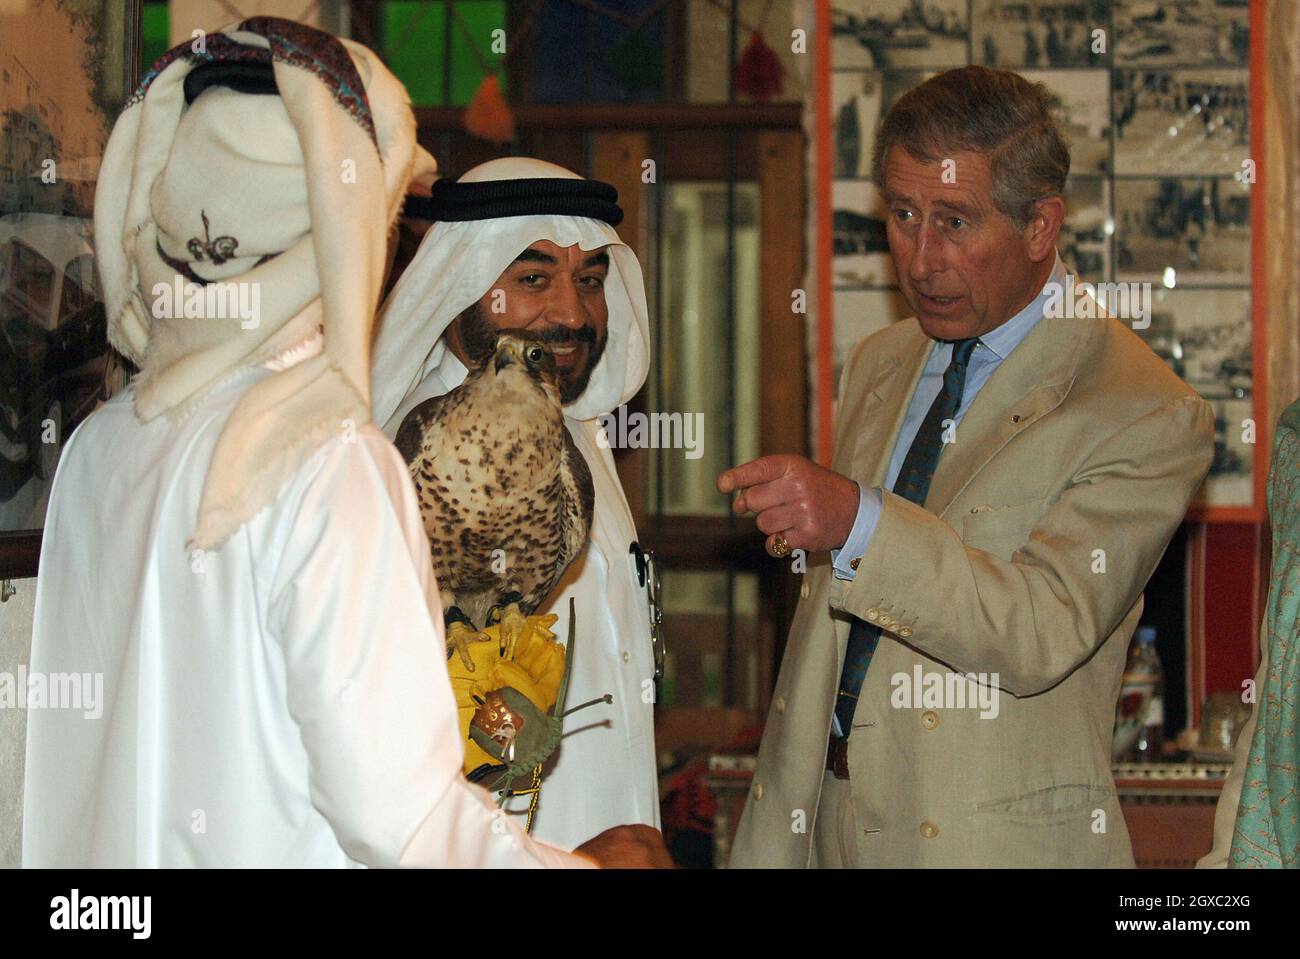 Il Principe Carlo, Principe di Galles, si ferma per guardare un falco durante una visita a un tradizionale suk arabo a Doha, Qatar. Data immagine: Venerdì 23 febbraio 2007. Foto di Anwar Hussein/EMPICS Entertainment Foto Stock